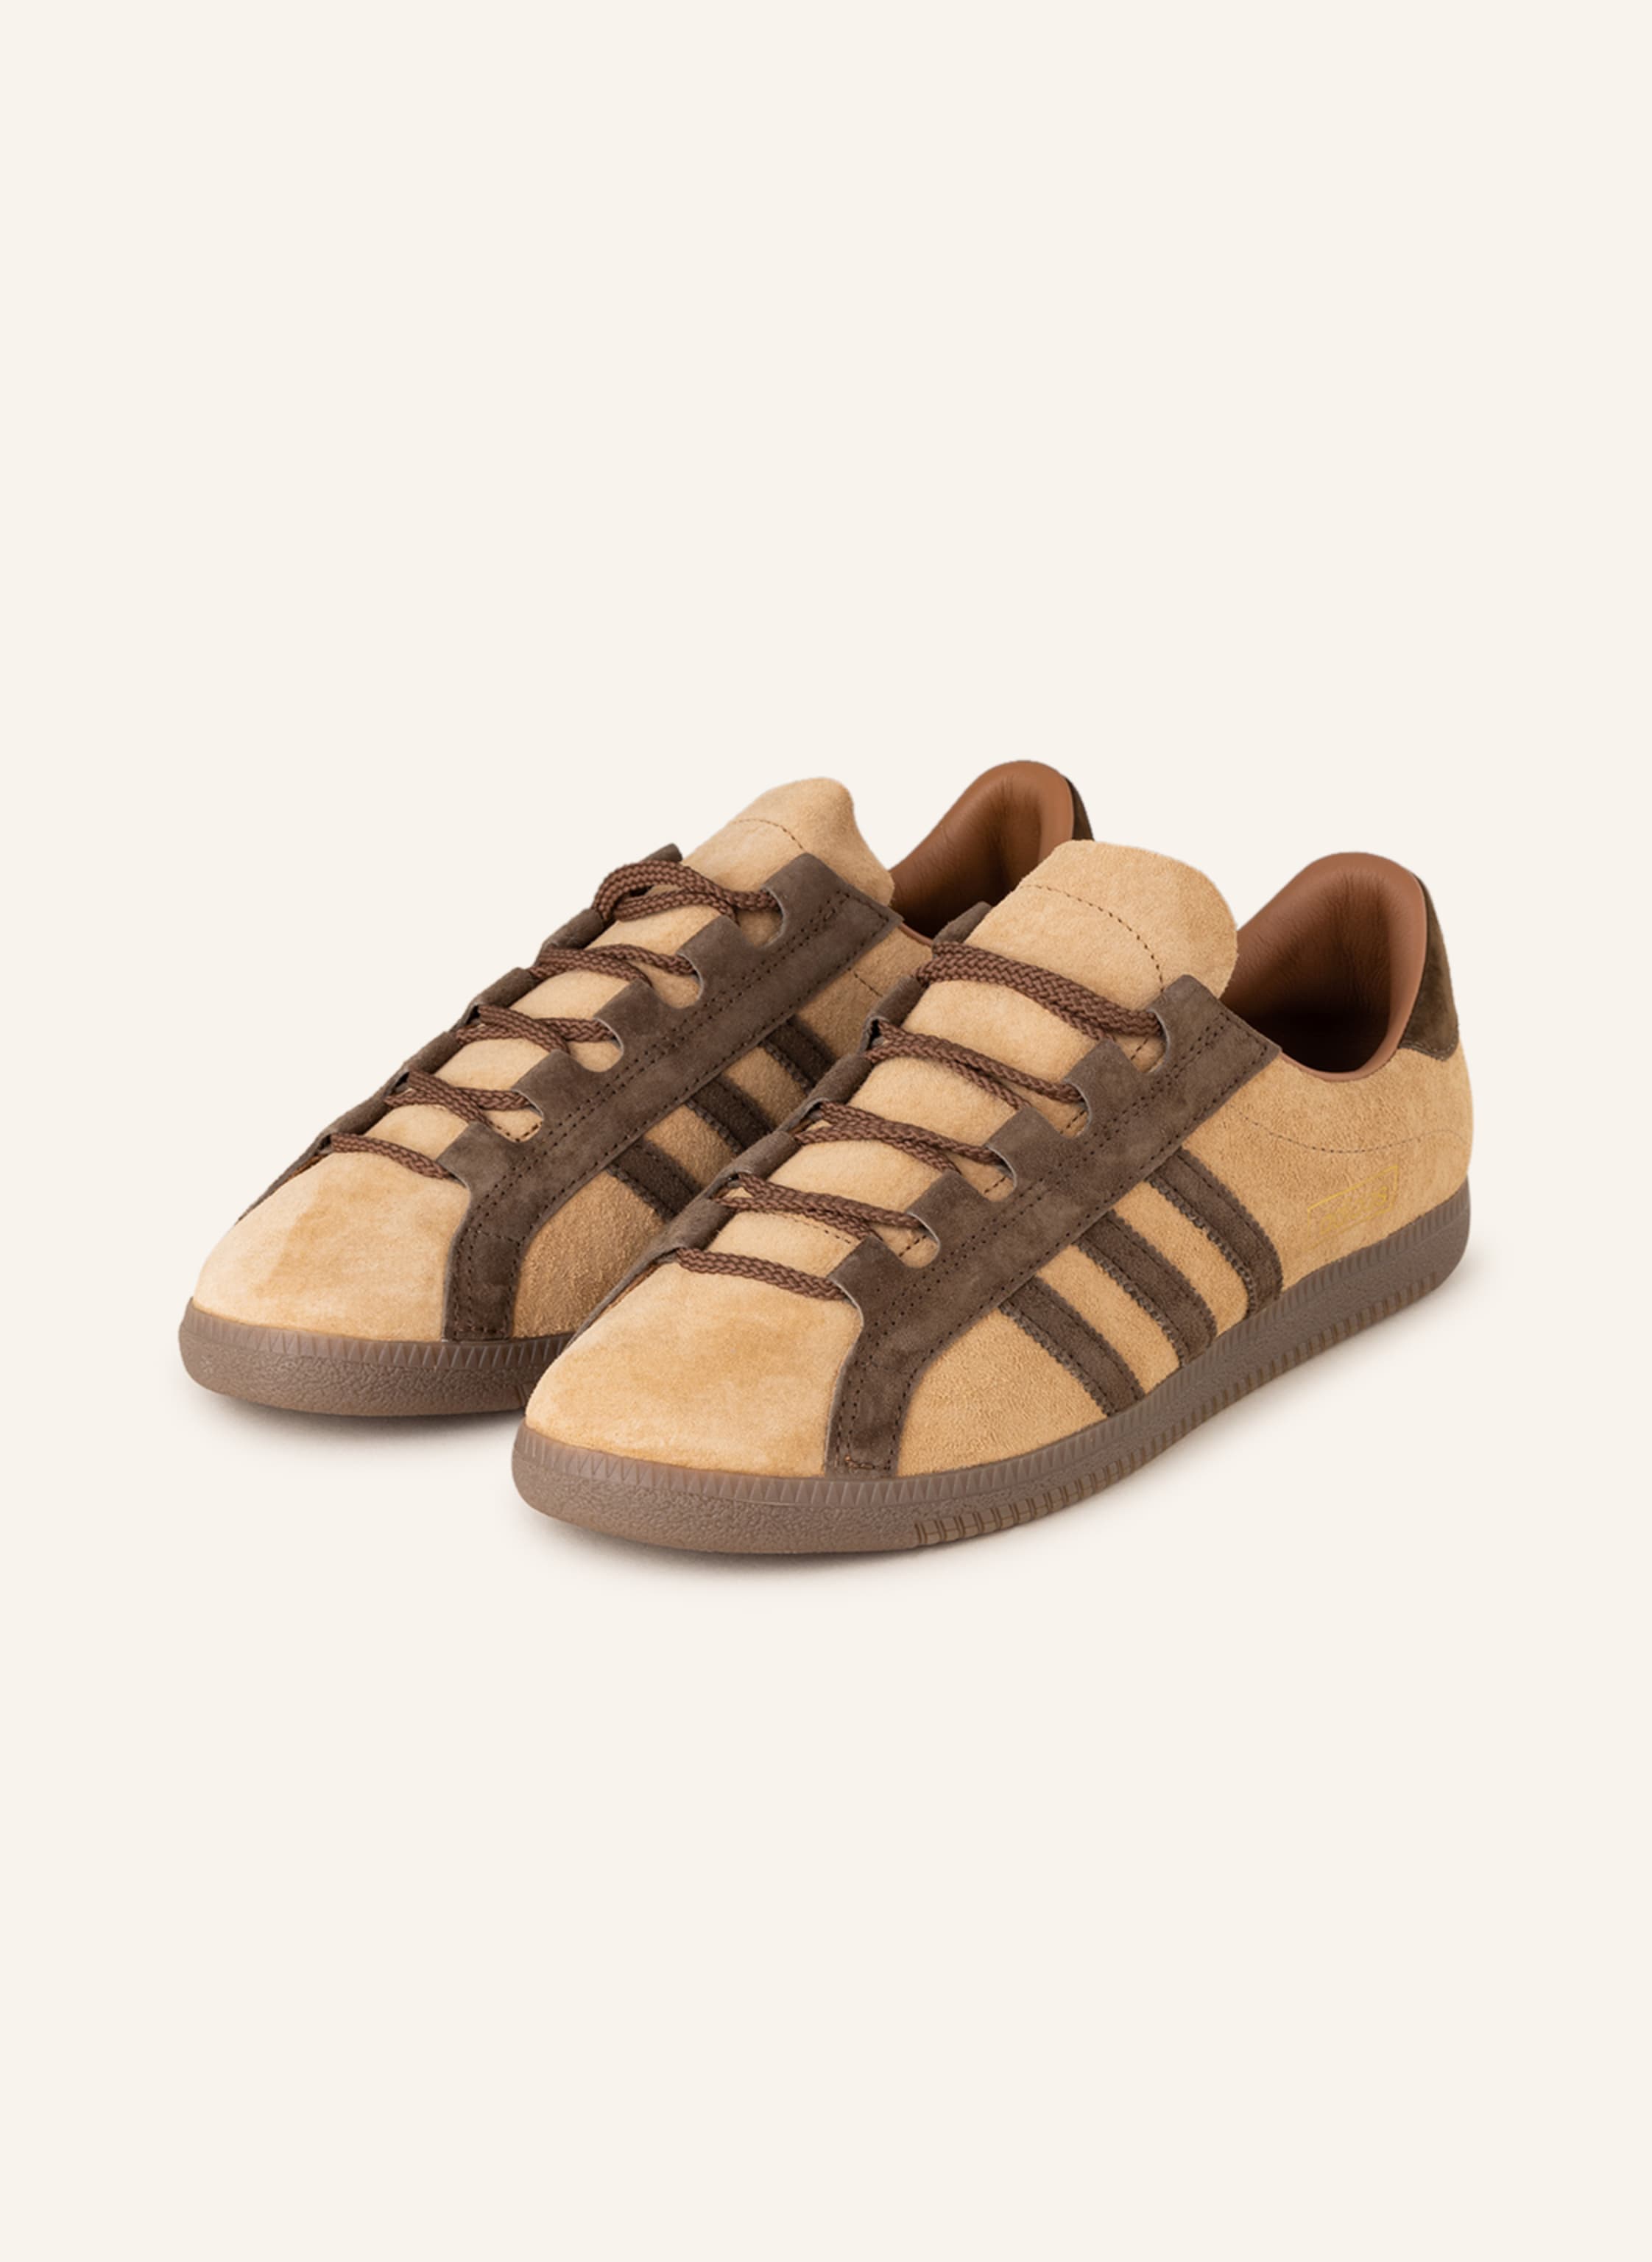 adidas Originals Sneakers SPZL in brown/ | Breuninger